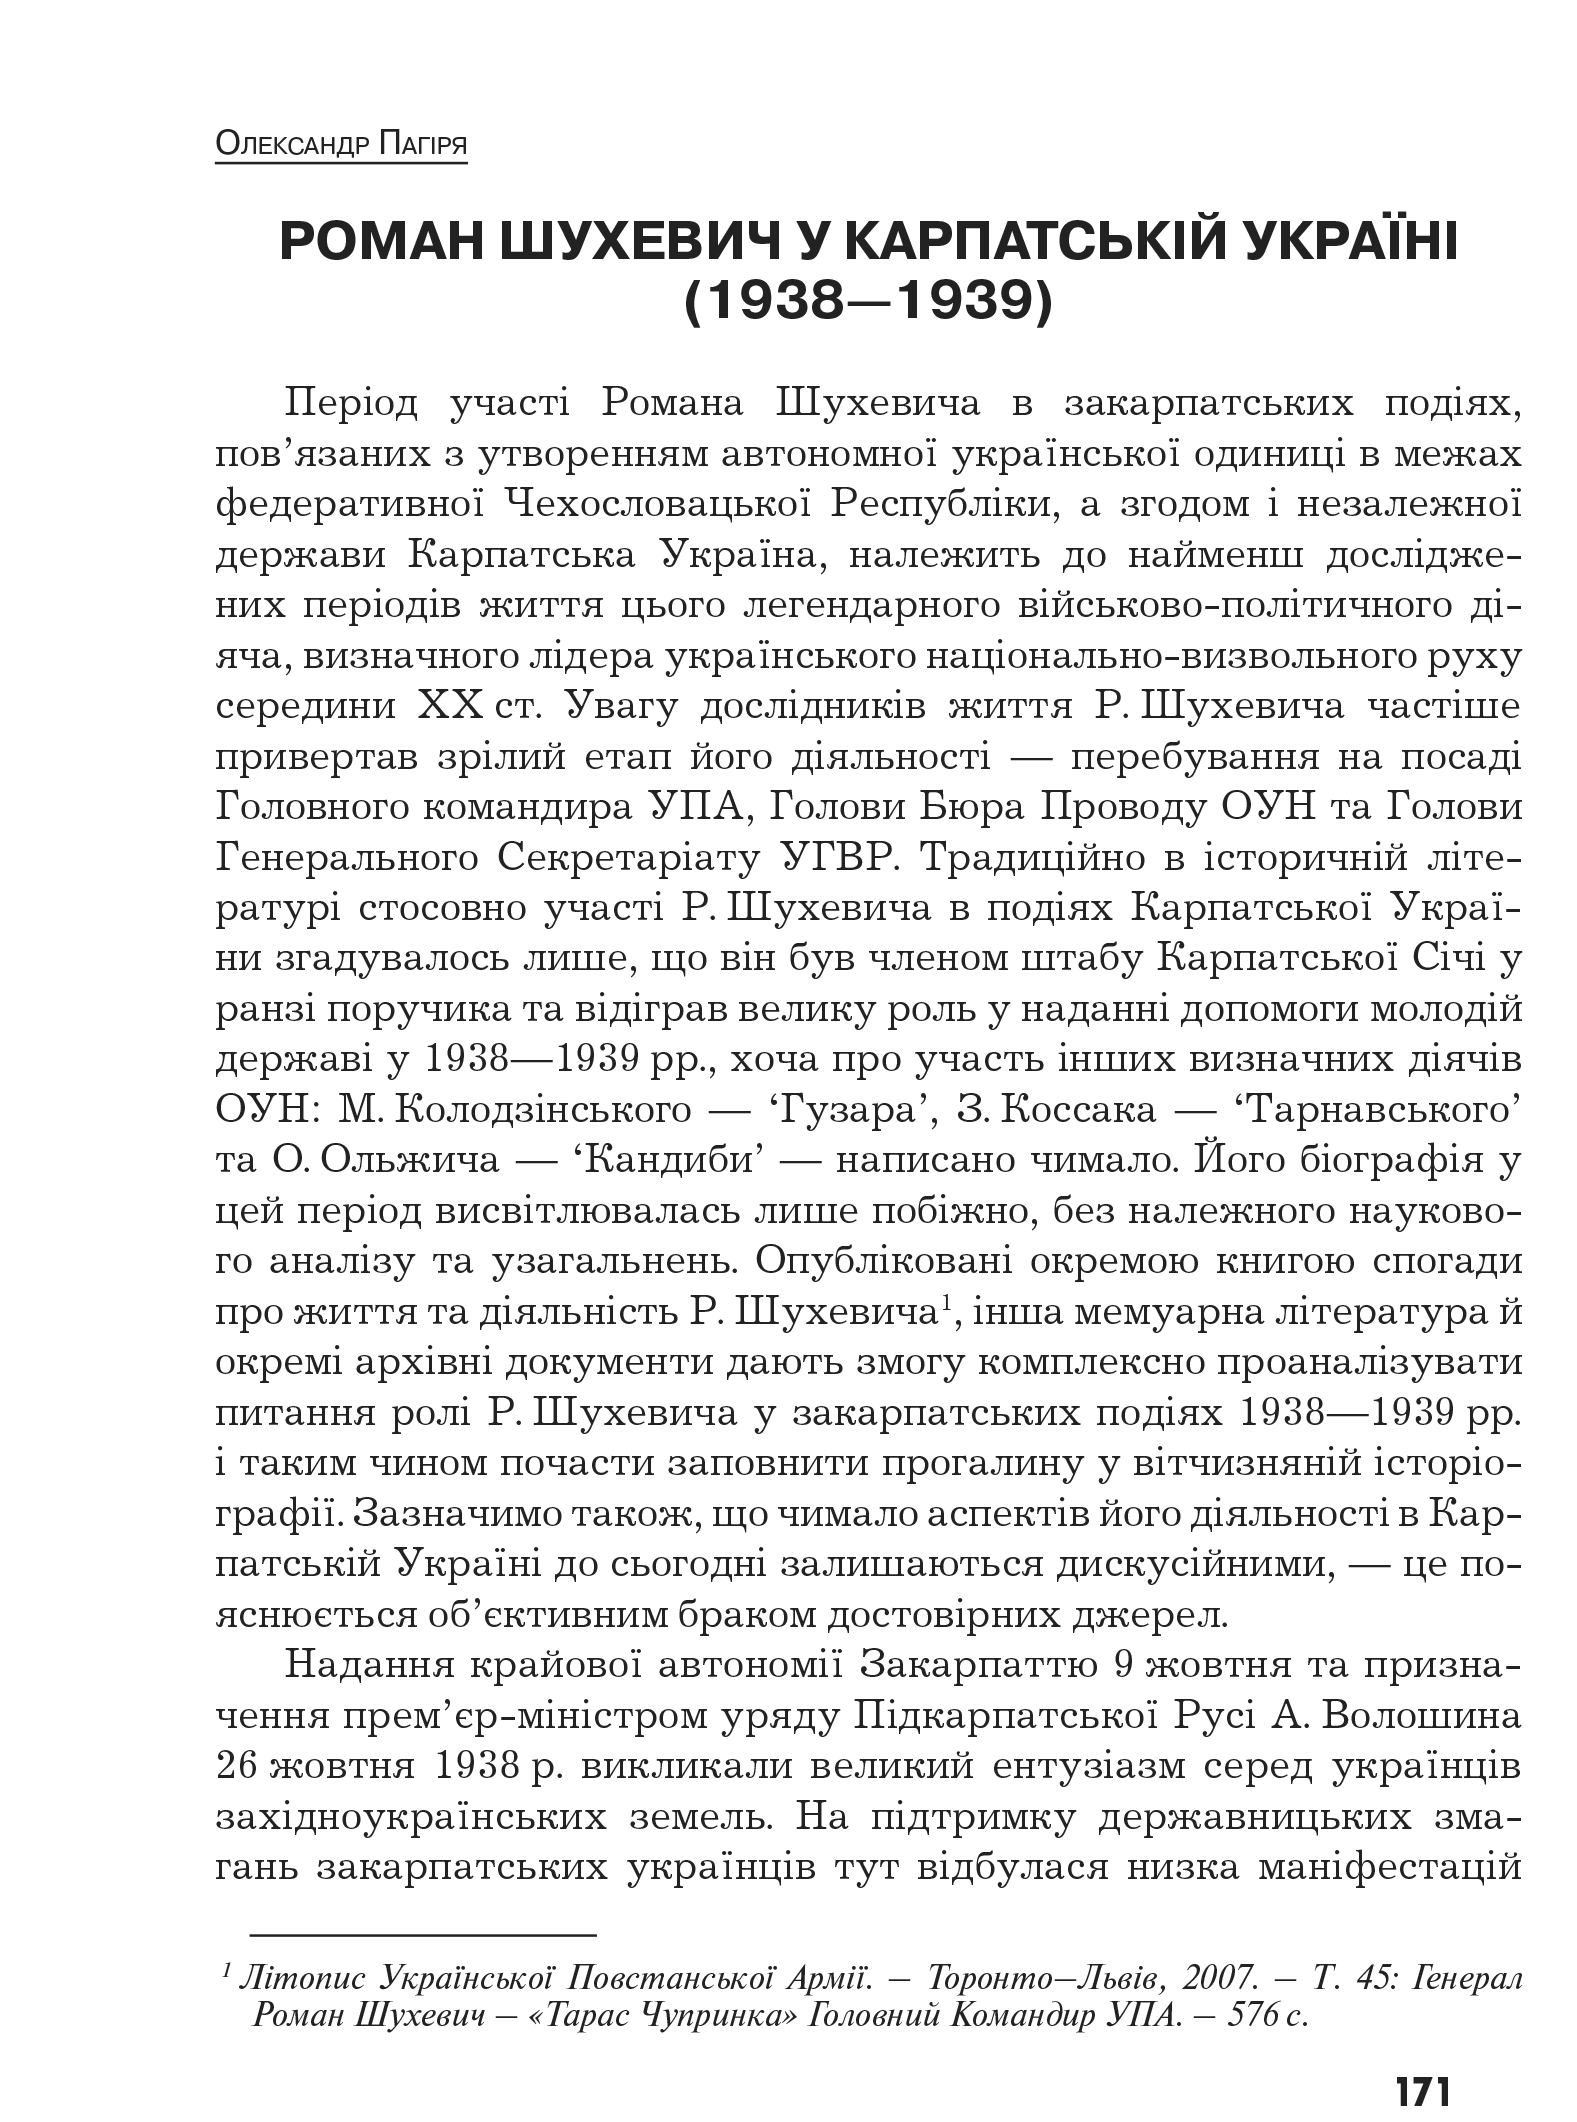 Український визвольний рух №10, ст. 171 - 185